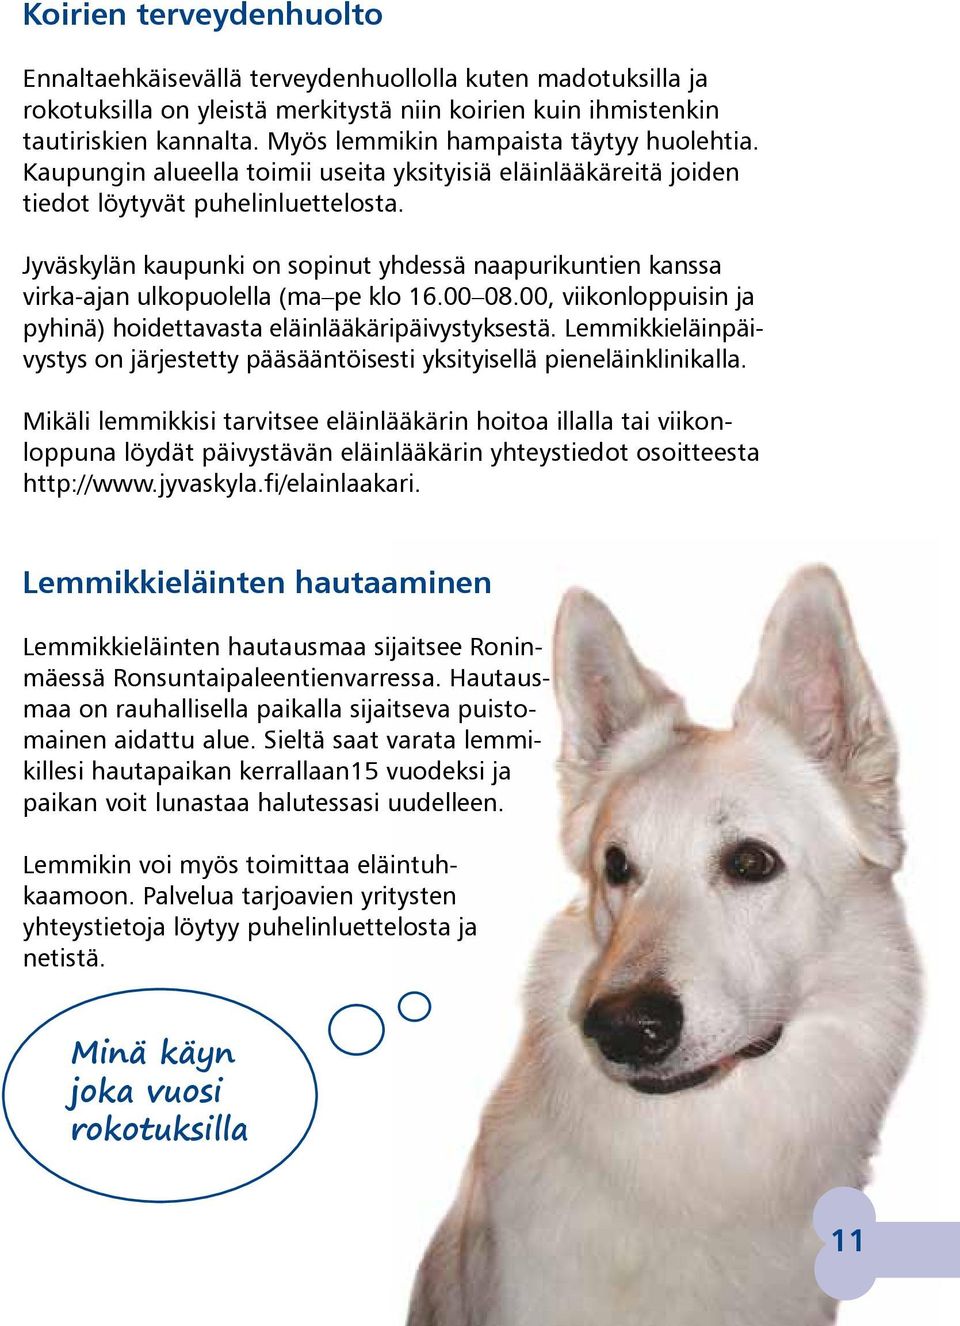 Jyväskylän kaupunki on sopinut yhdessä naapurikuntien kanssa virka-ajan ulkopuolella (ma pe klo 16.00 08.00, viikonloppuisin ja pyhinä) hoidettavasta eläinlääkäripäivystyksestä.